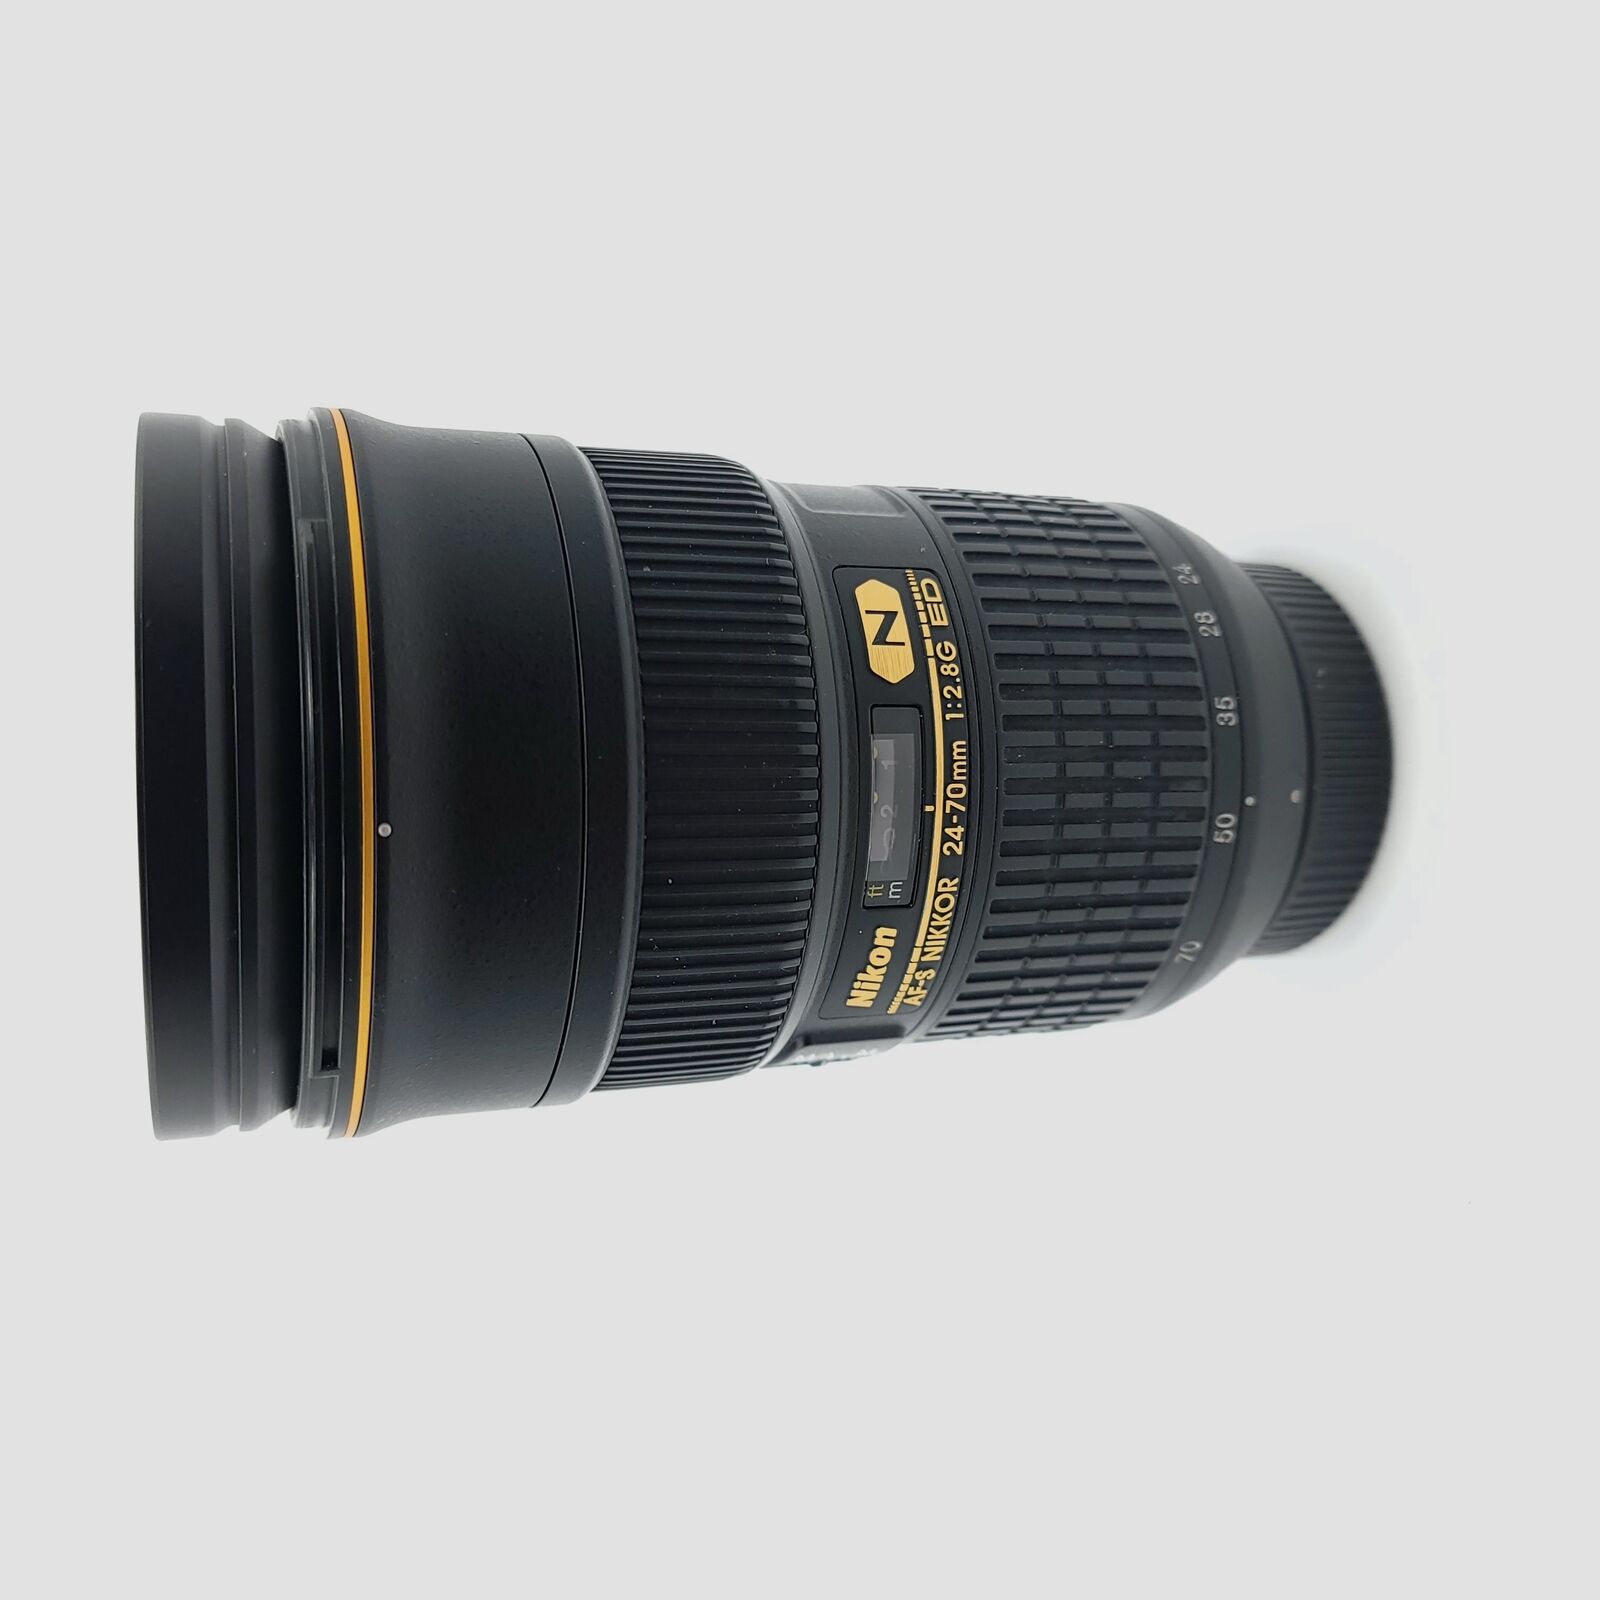 USED Nikon 24-70mm F2.8 G ED AF-S Lens